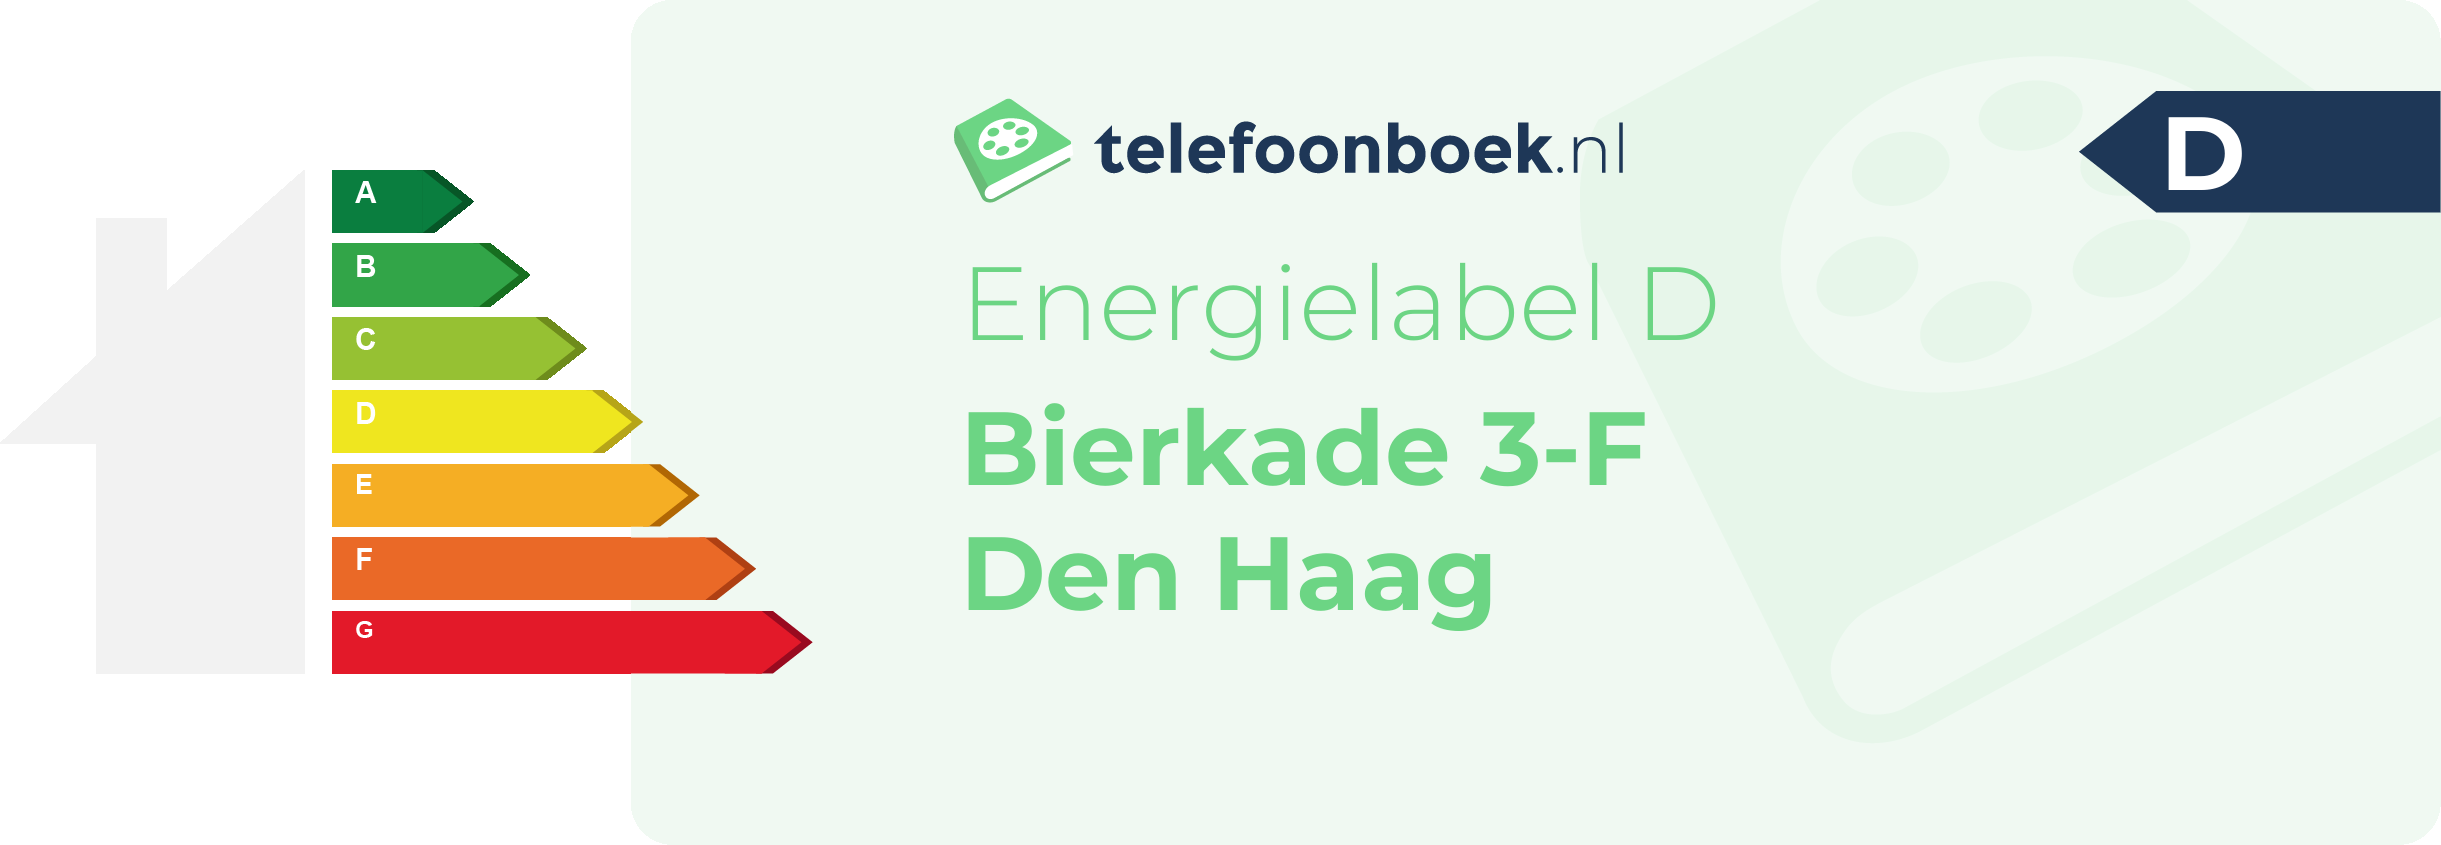 Energielabel Bierkade 3-F Den Haag